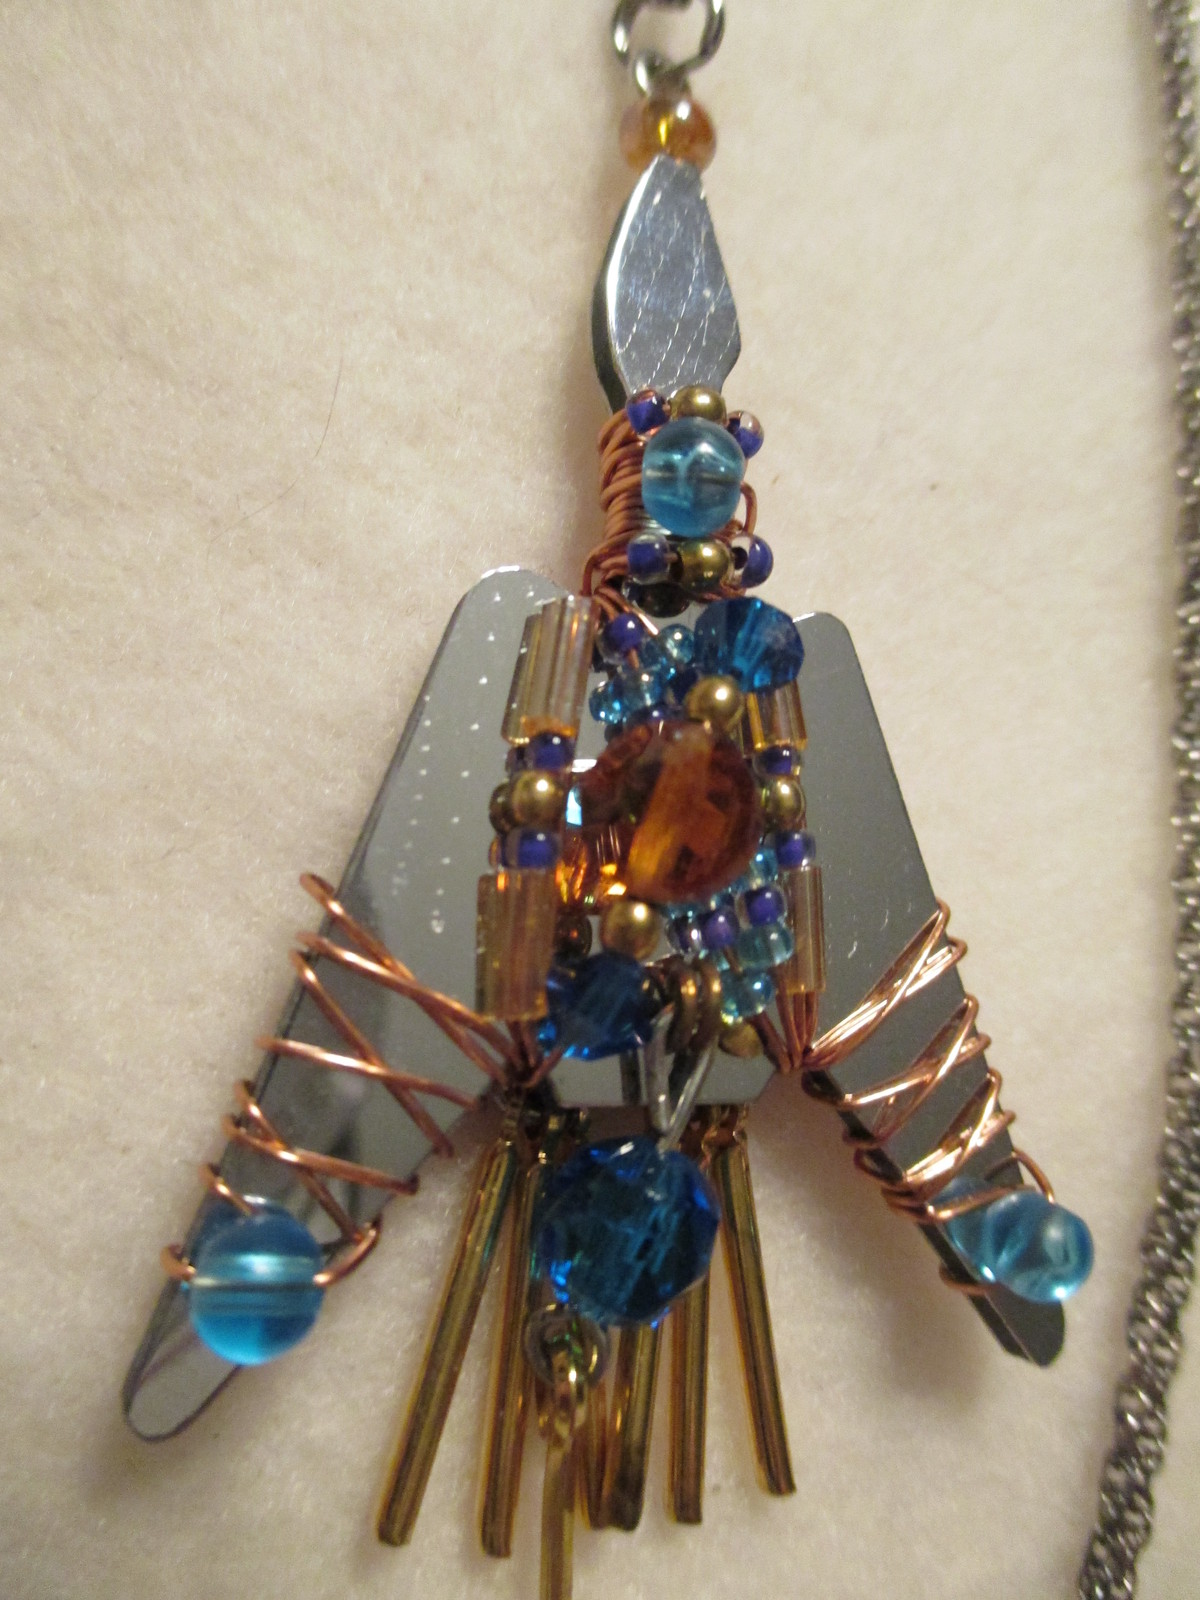  LizTech Kiowa Prayer Bird Shaman Pendant Retired Very Rare - $175.00